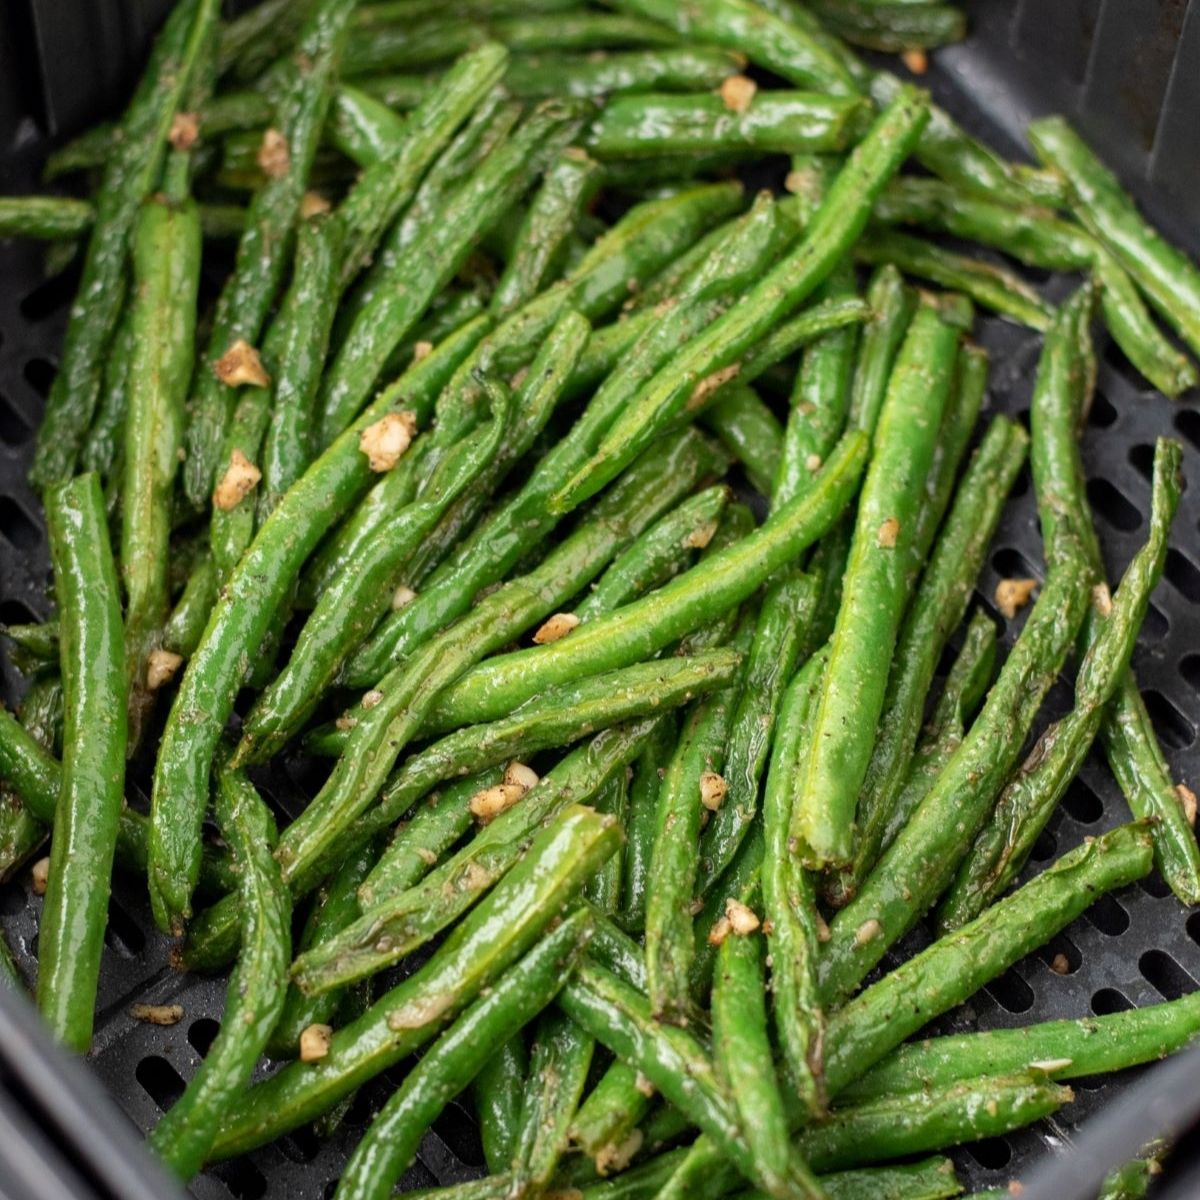 air fryer green beans